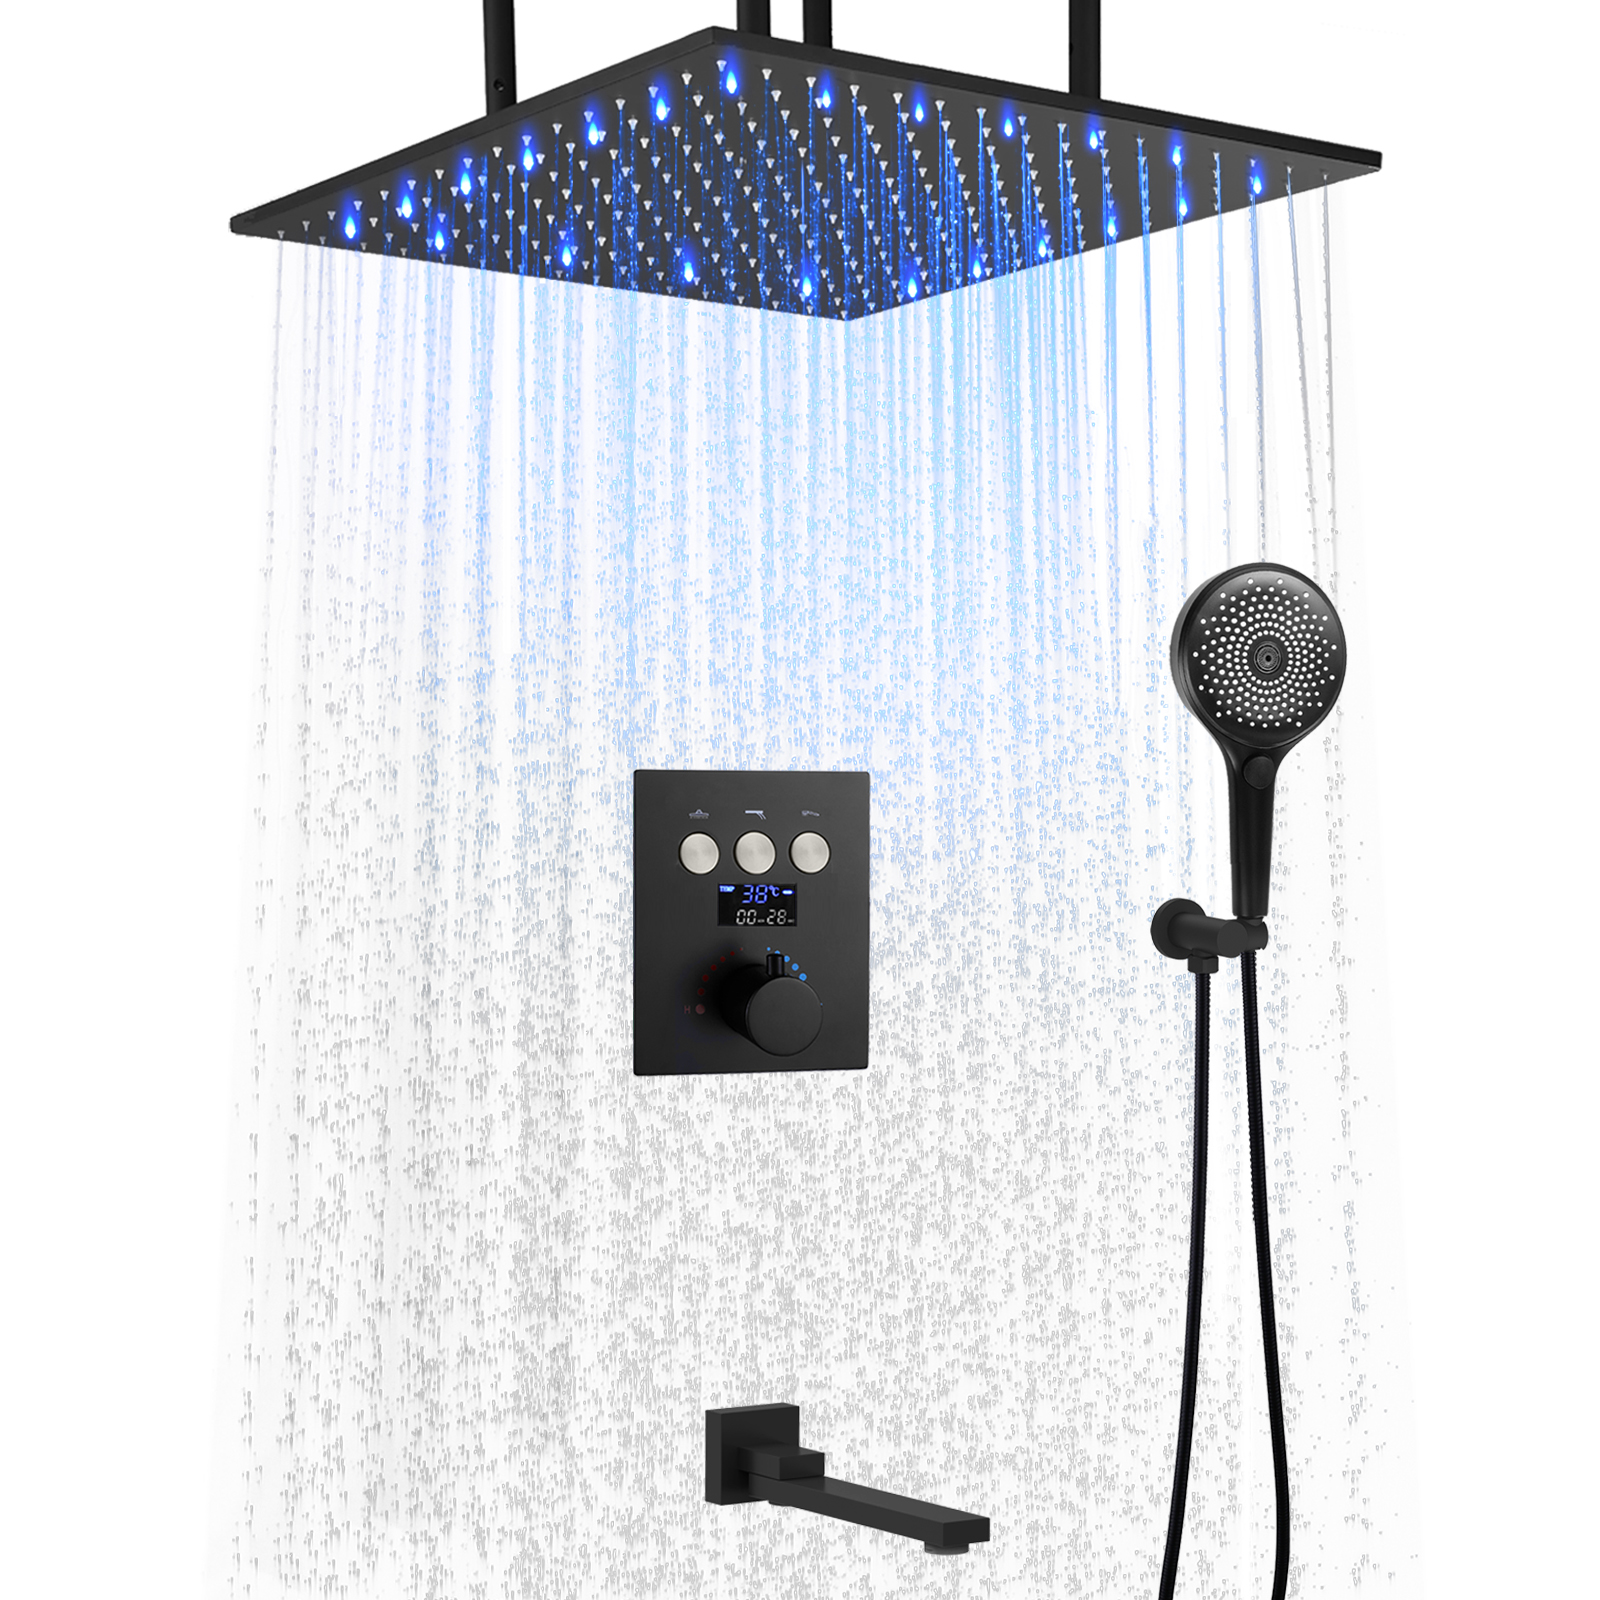 Número de temperatura LED que muestra el sistema de ducha baño temperatura constante bronce lluvia cabezal de ducha Kit de combinación